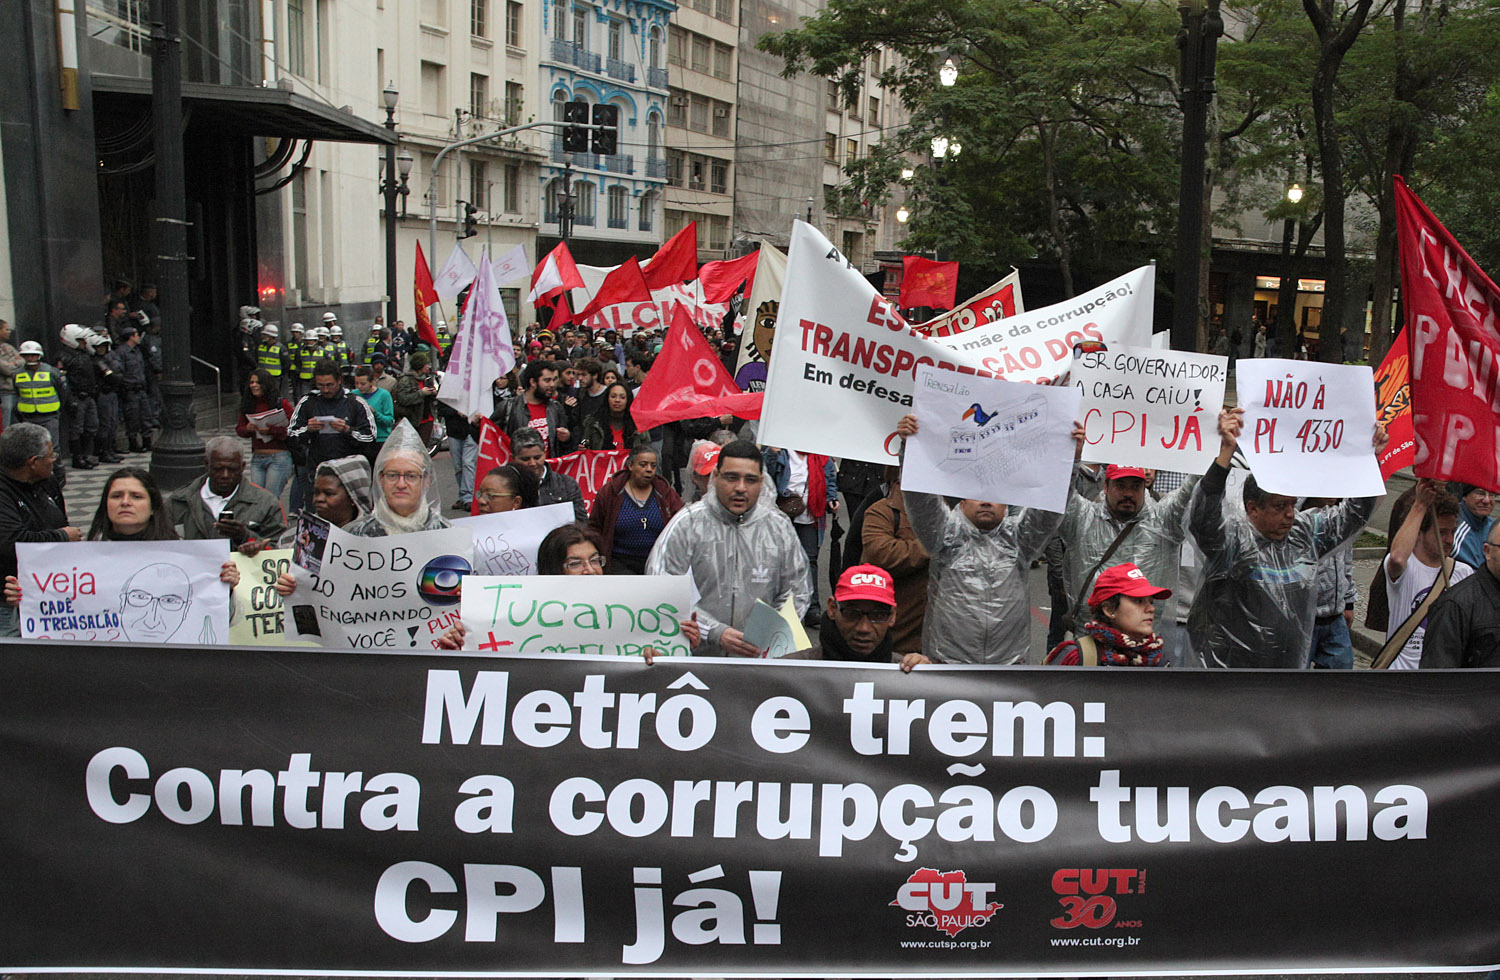 Contra corrupção tucana nos trens e metrôs, 4 mil ocupam o centro de São Paulo